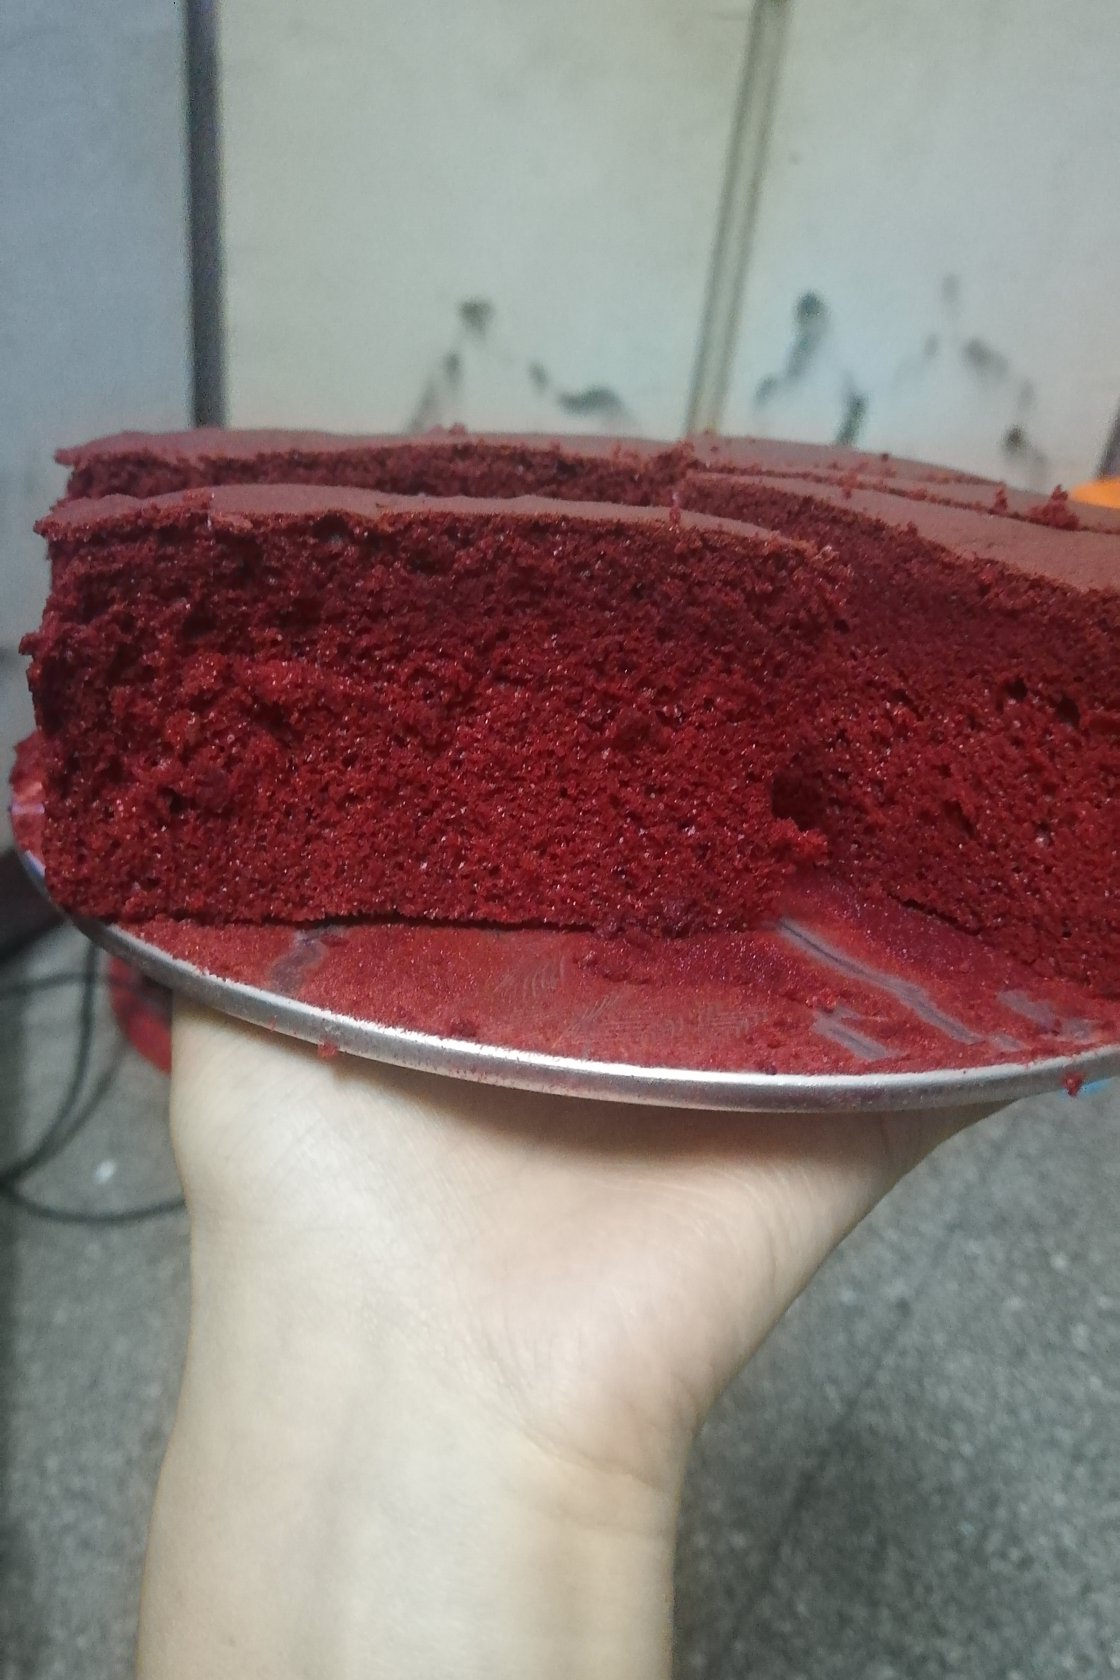 8寸红丝绒蛋糕